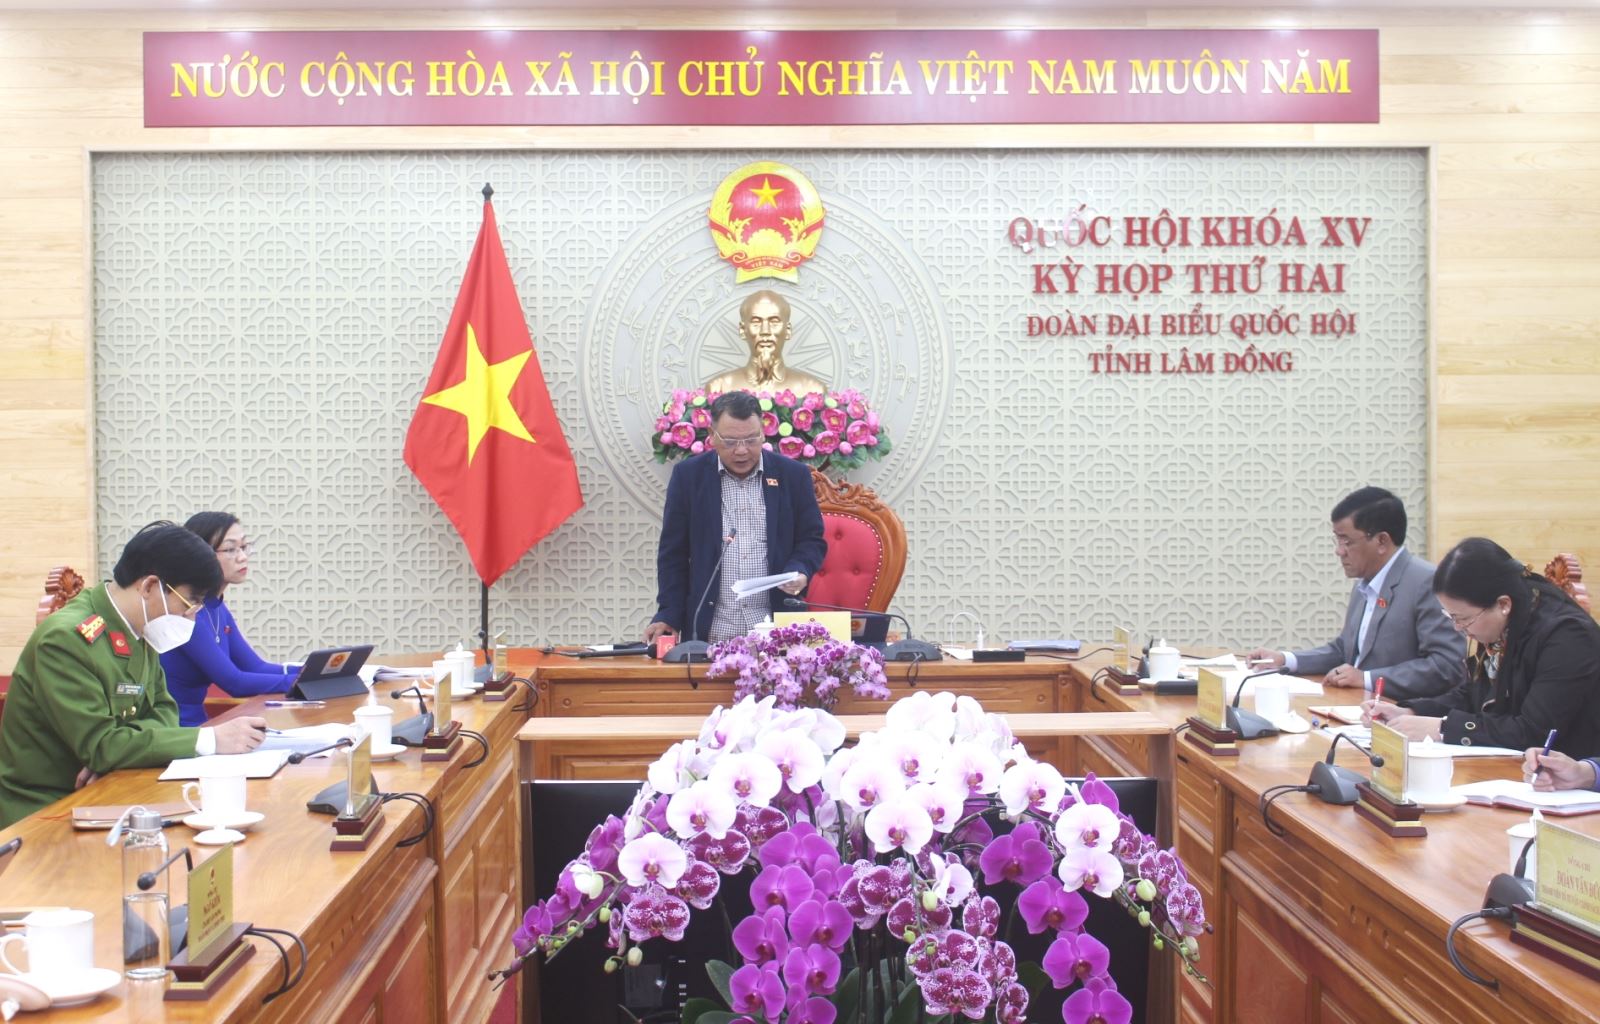 1.	Đại biểu Nguyễn Tạo Phó Trưởng Đoàn Đại biểu Quốc hội tỉnh Lâm Đồng tham gia ý kiến tại phiên thảo luận